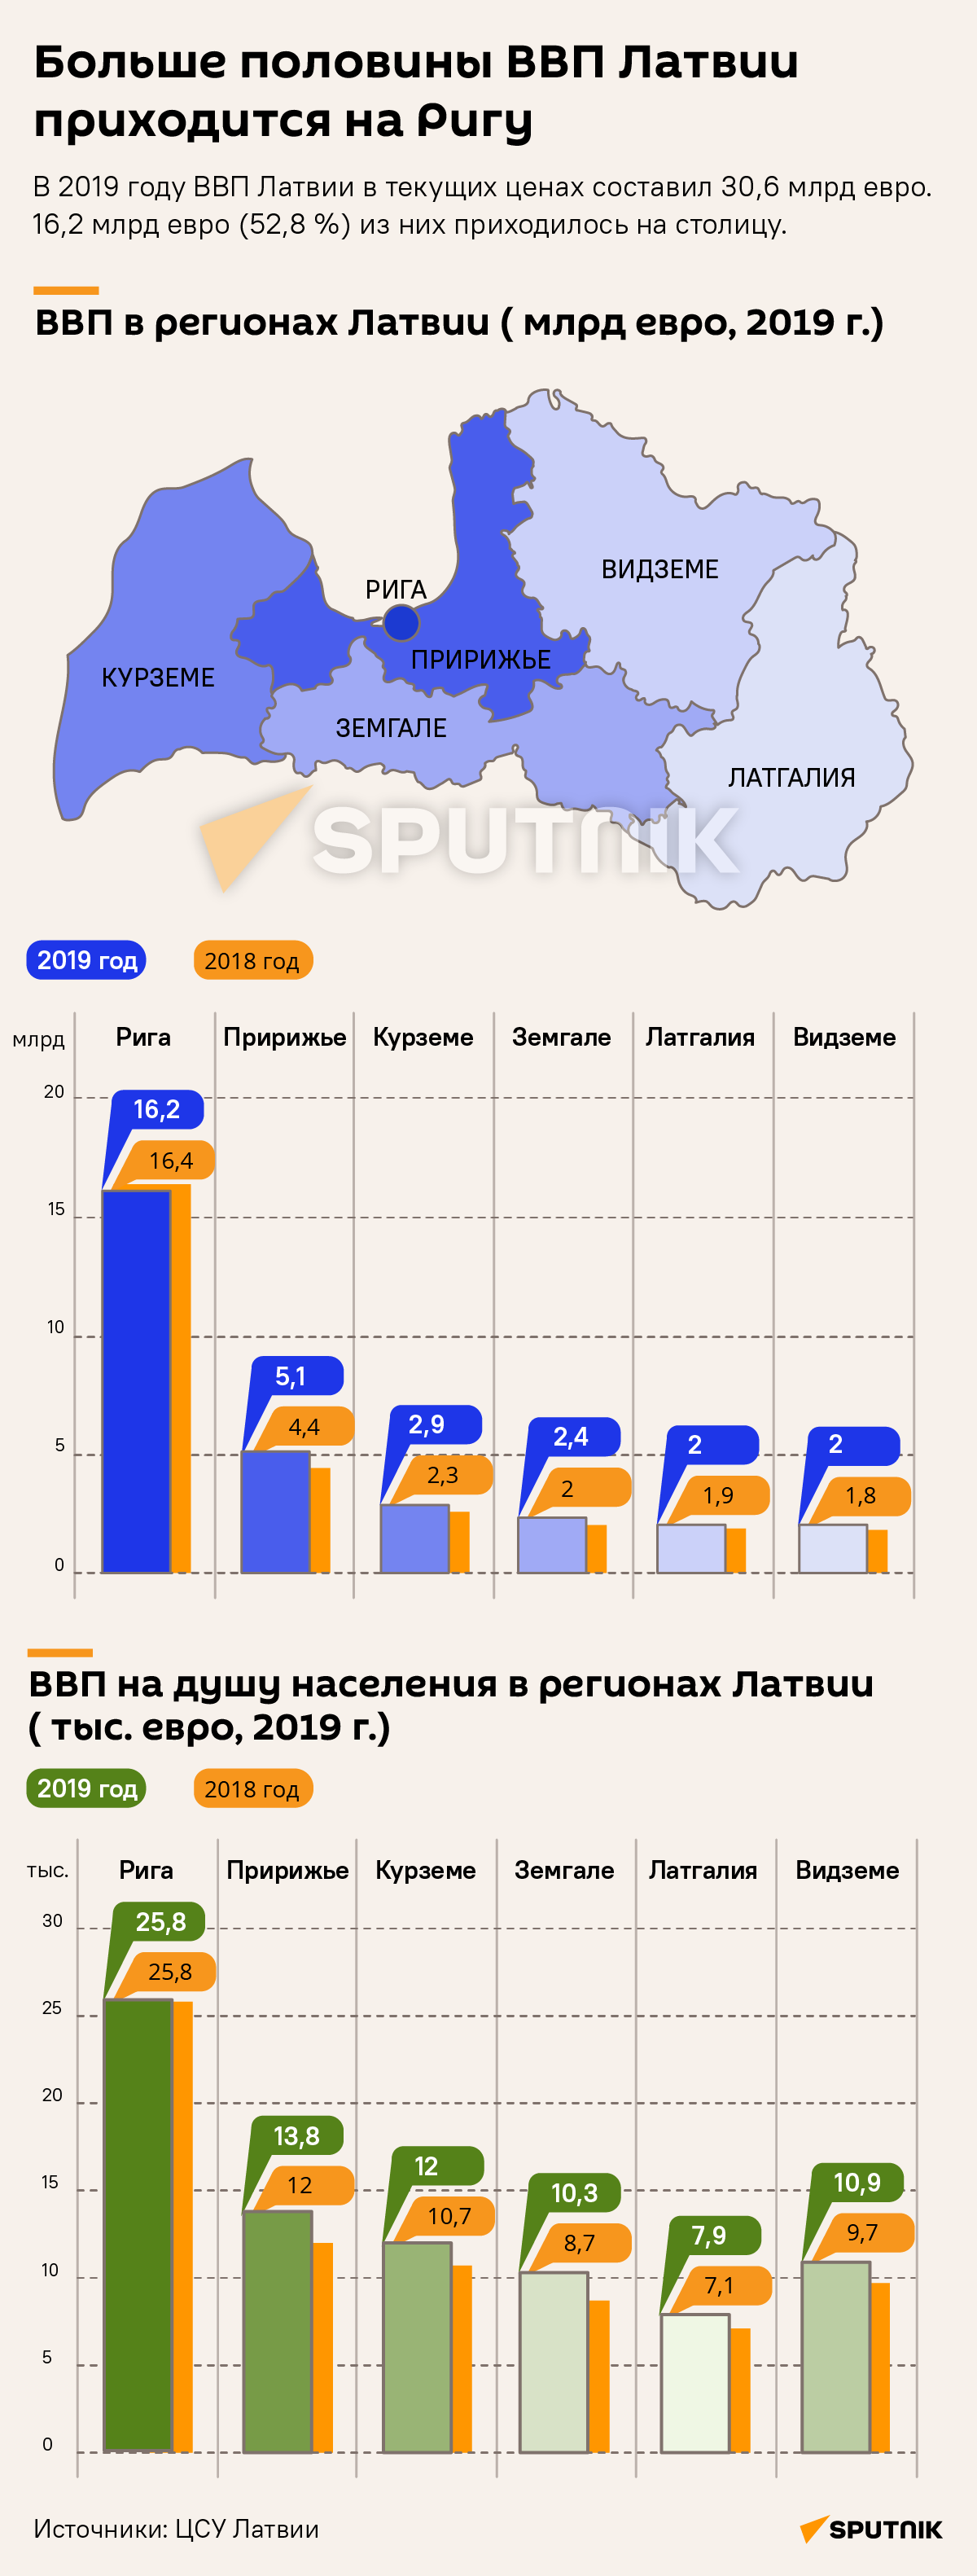 Больше половины ВВП Латвии приходится на Ригу - Sputnik Латвия